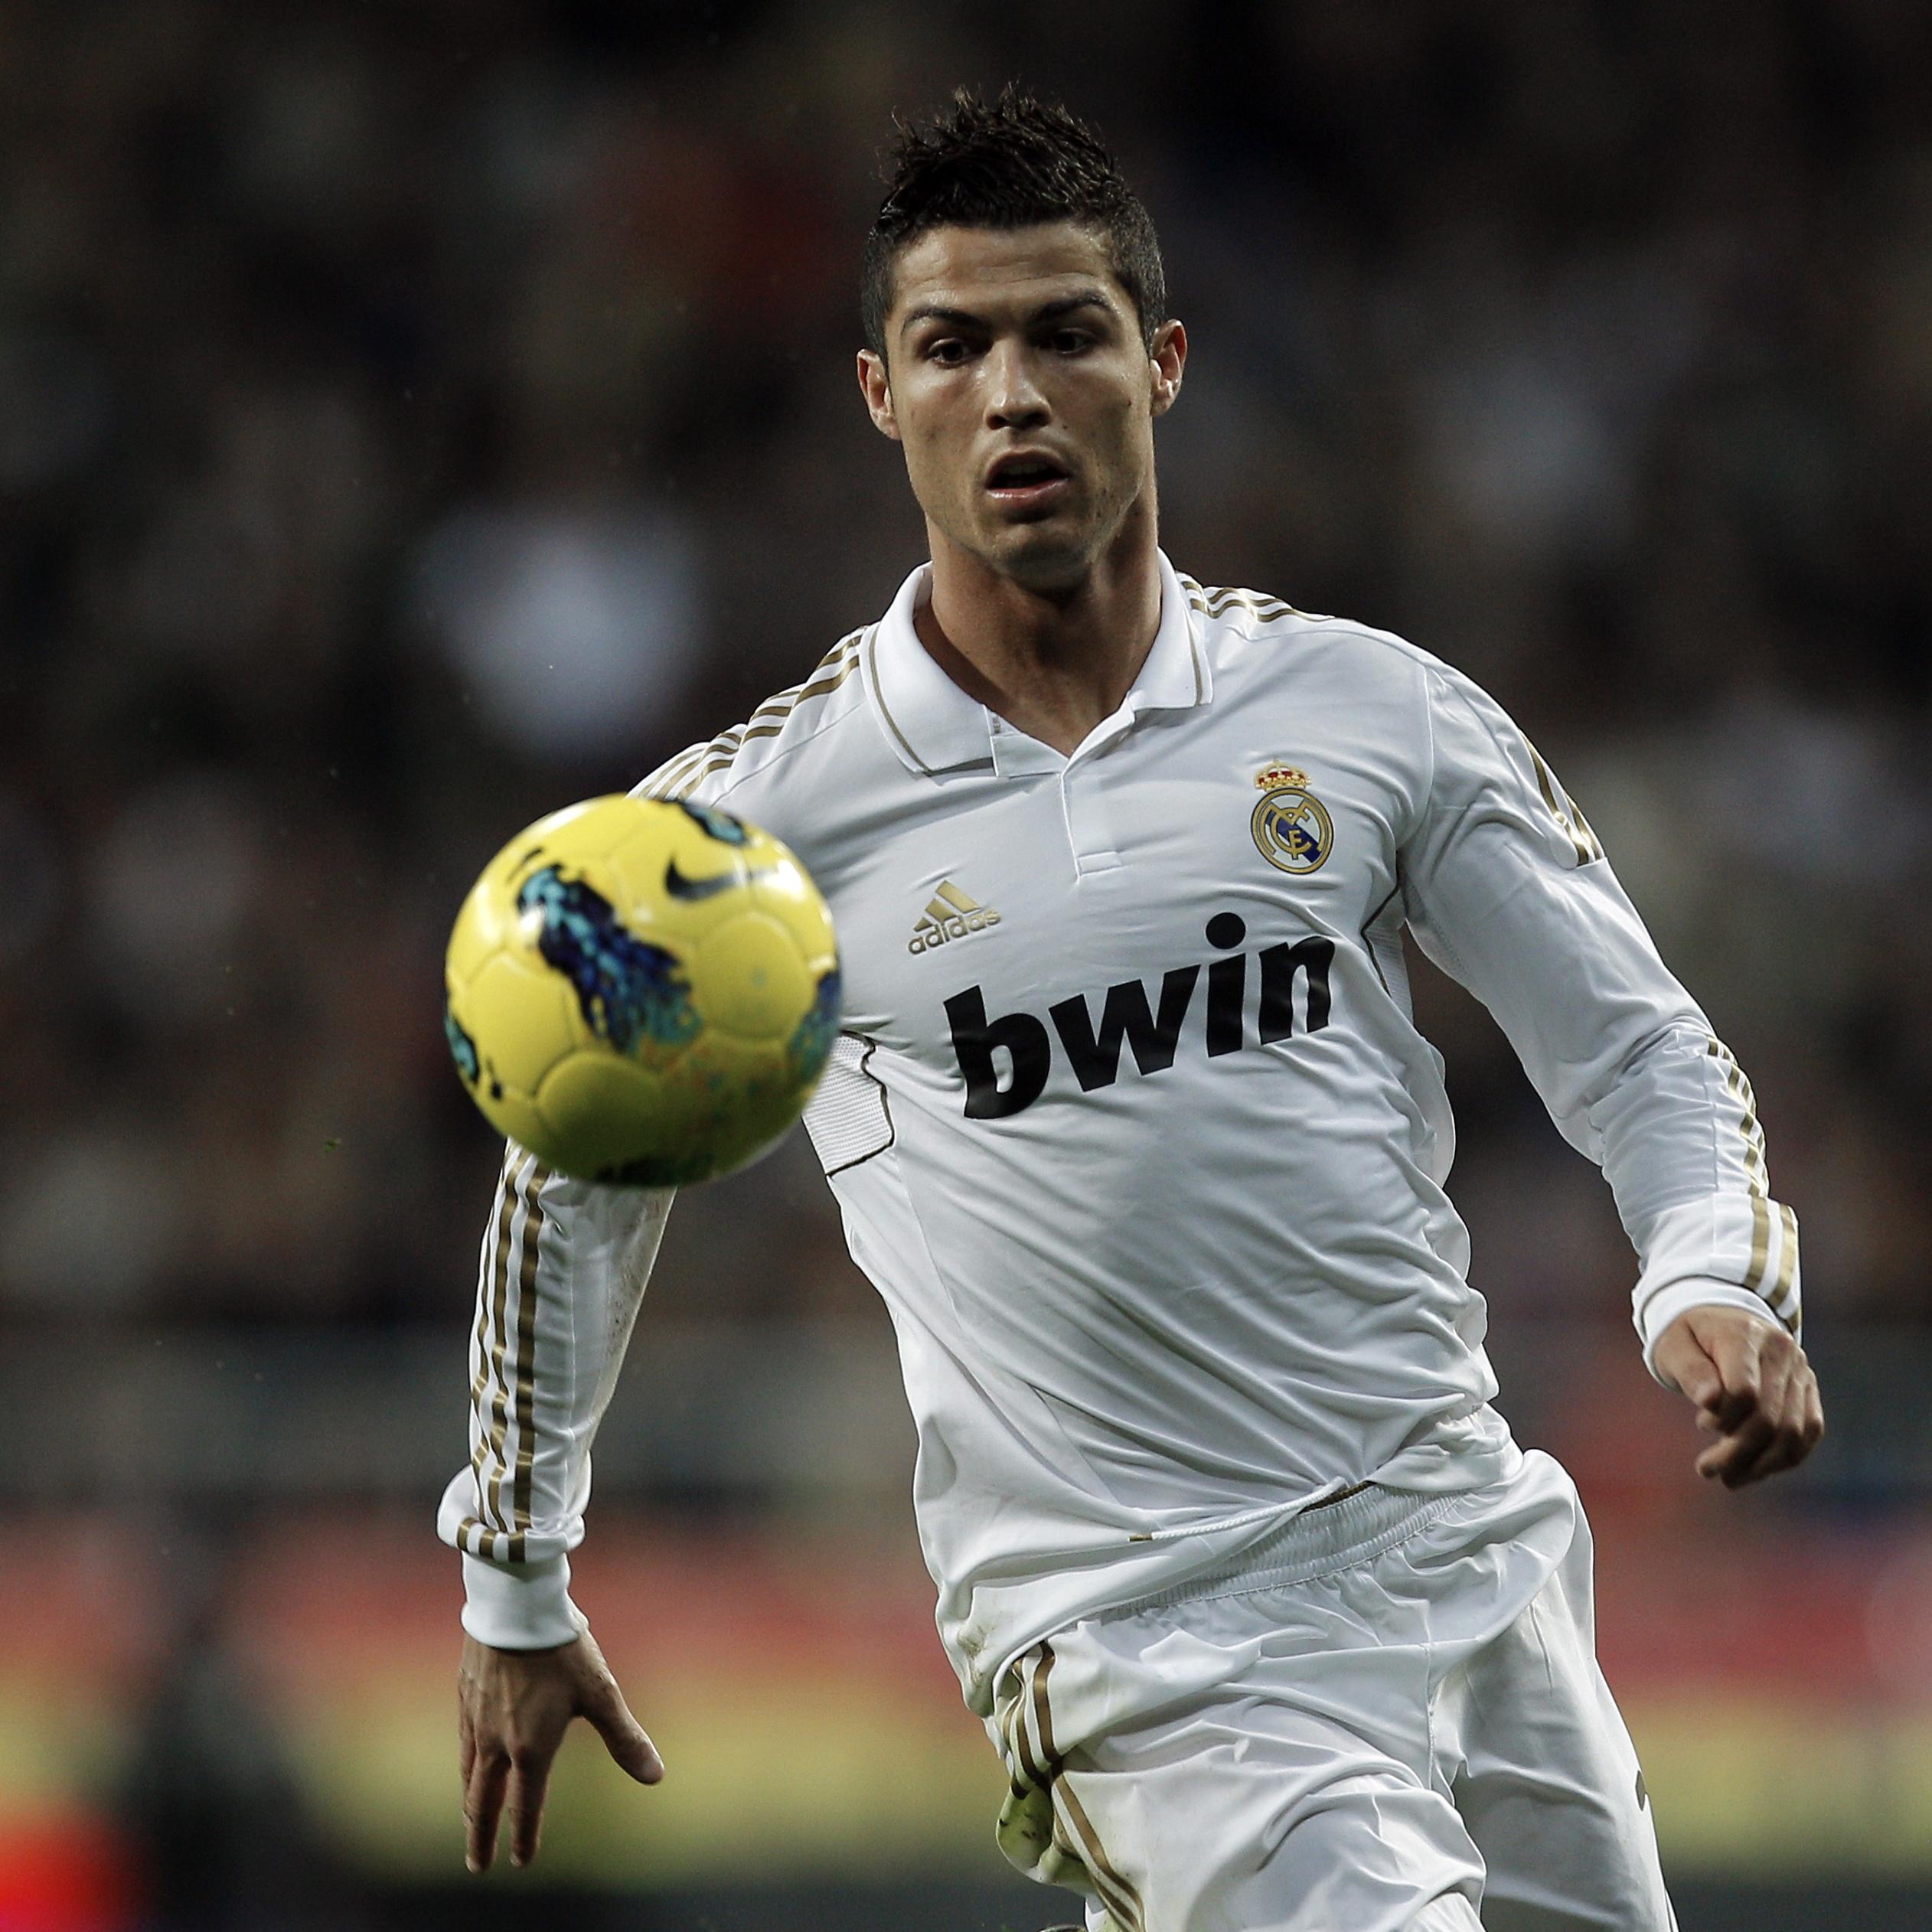 Cristiano Ronaldo play football at the stadium